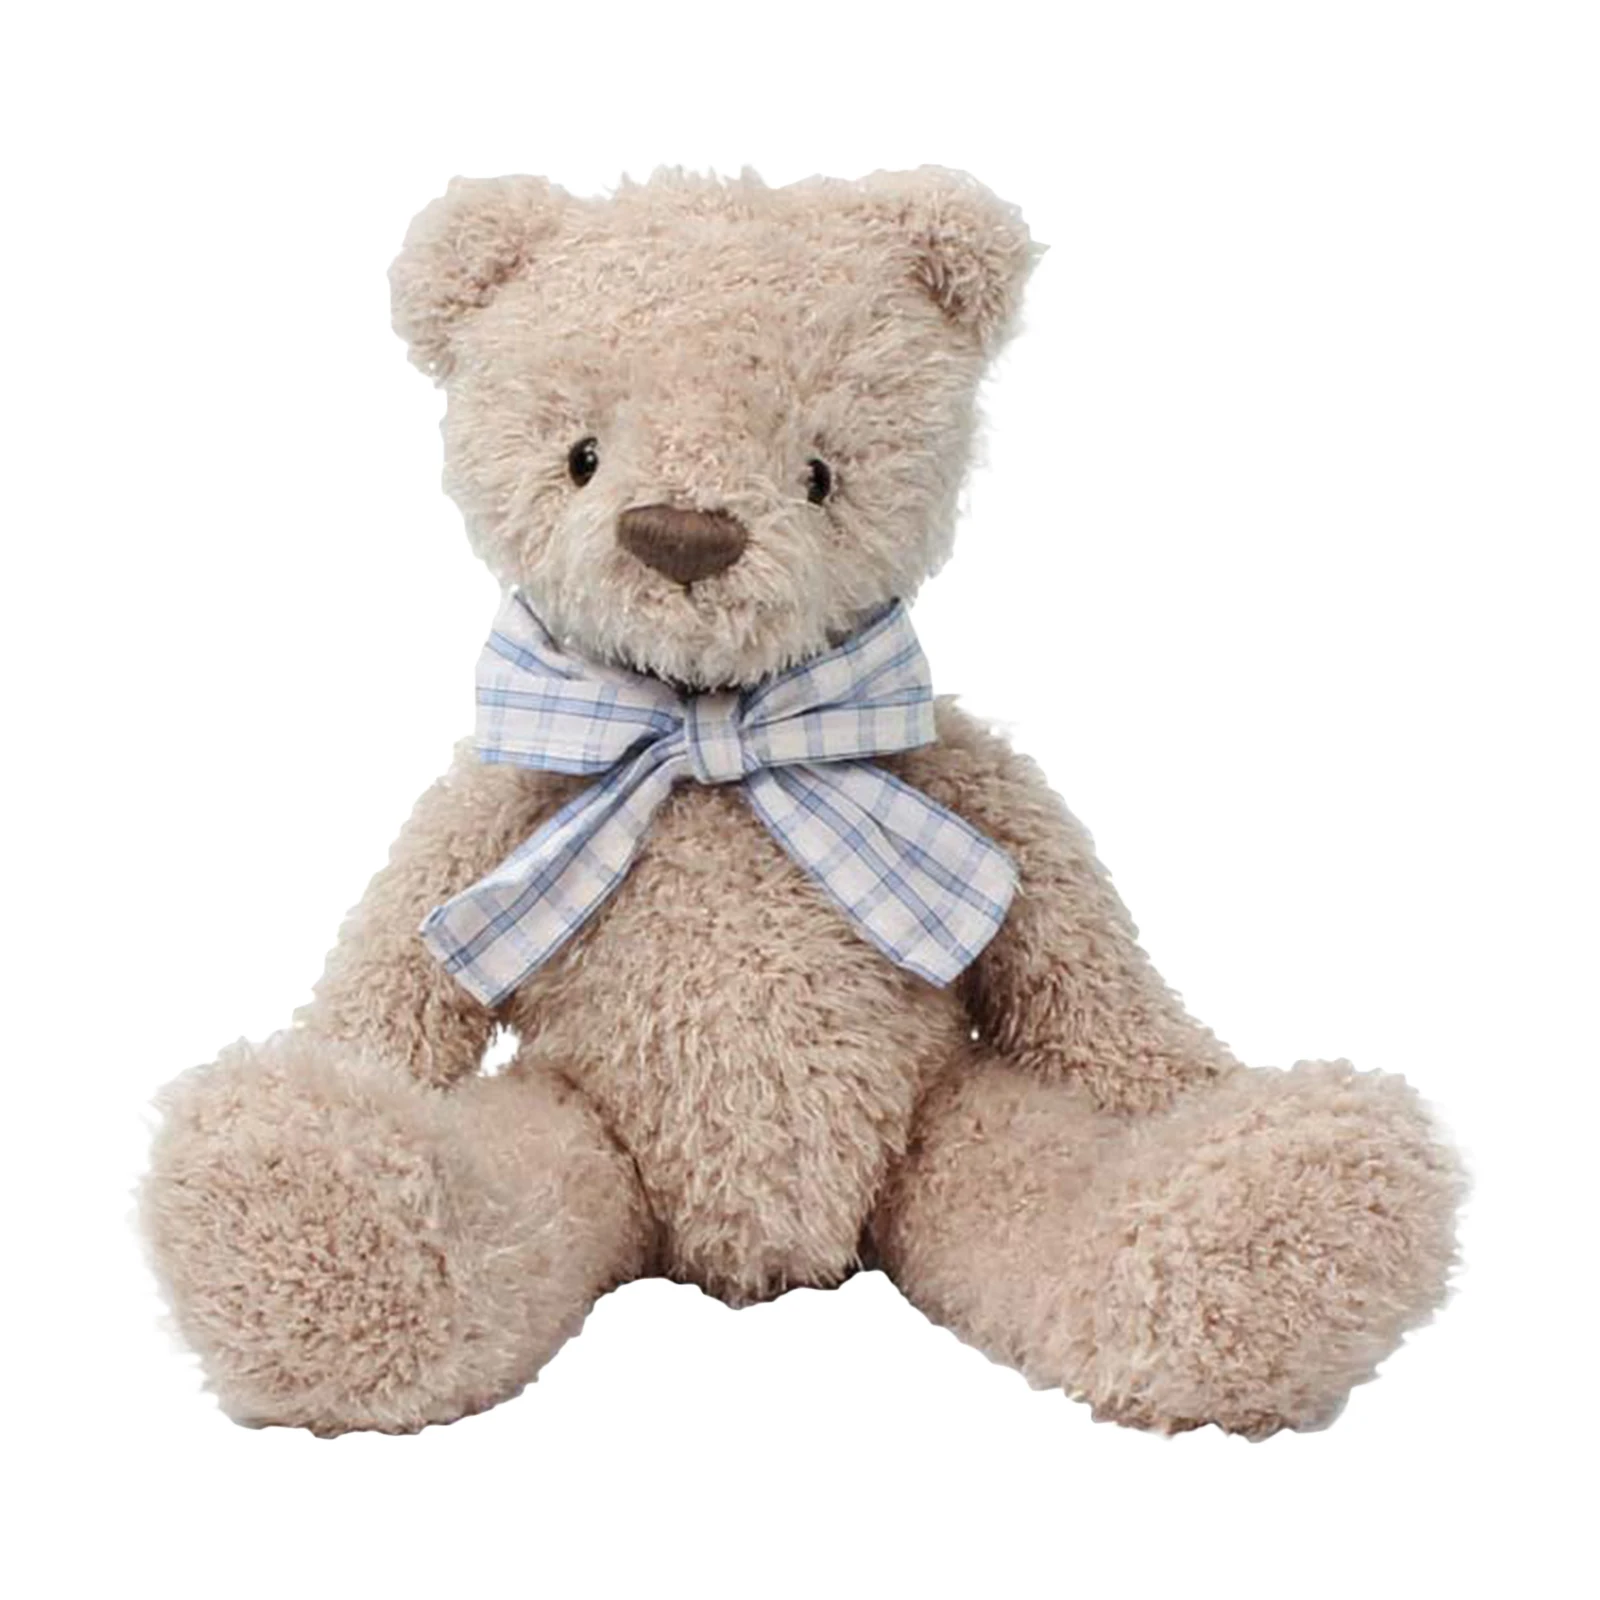 

Плюшевые игрушки Pudcoco, мультяшный медведь, кукла, мягкие игрушки с клетчатым галстуком-бабочкой, хороший подарок для детей, подруги, жены